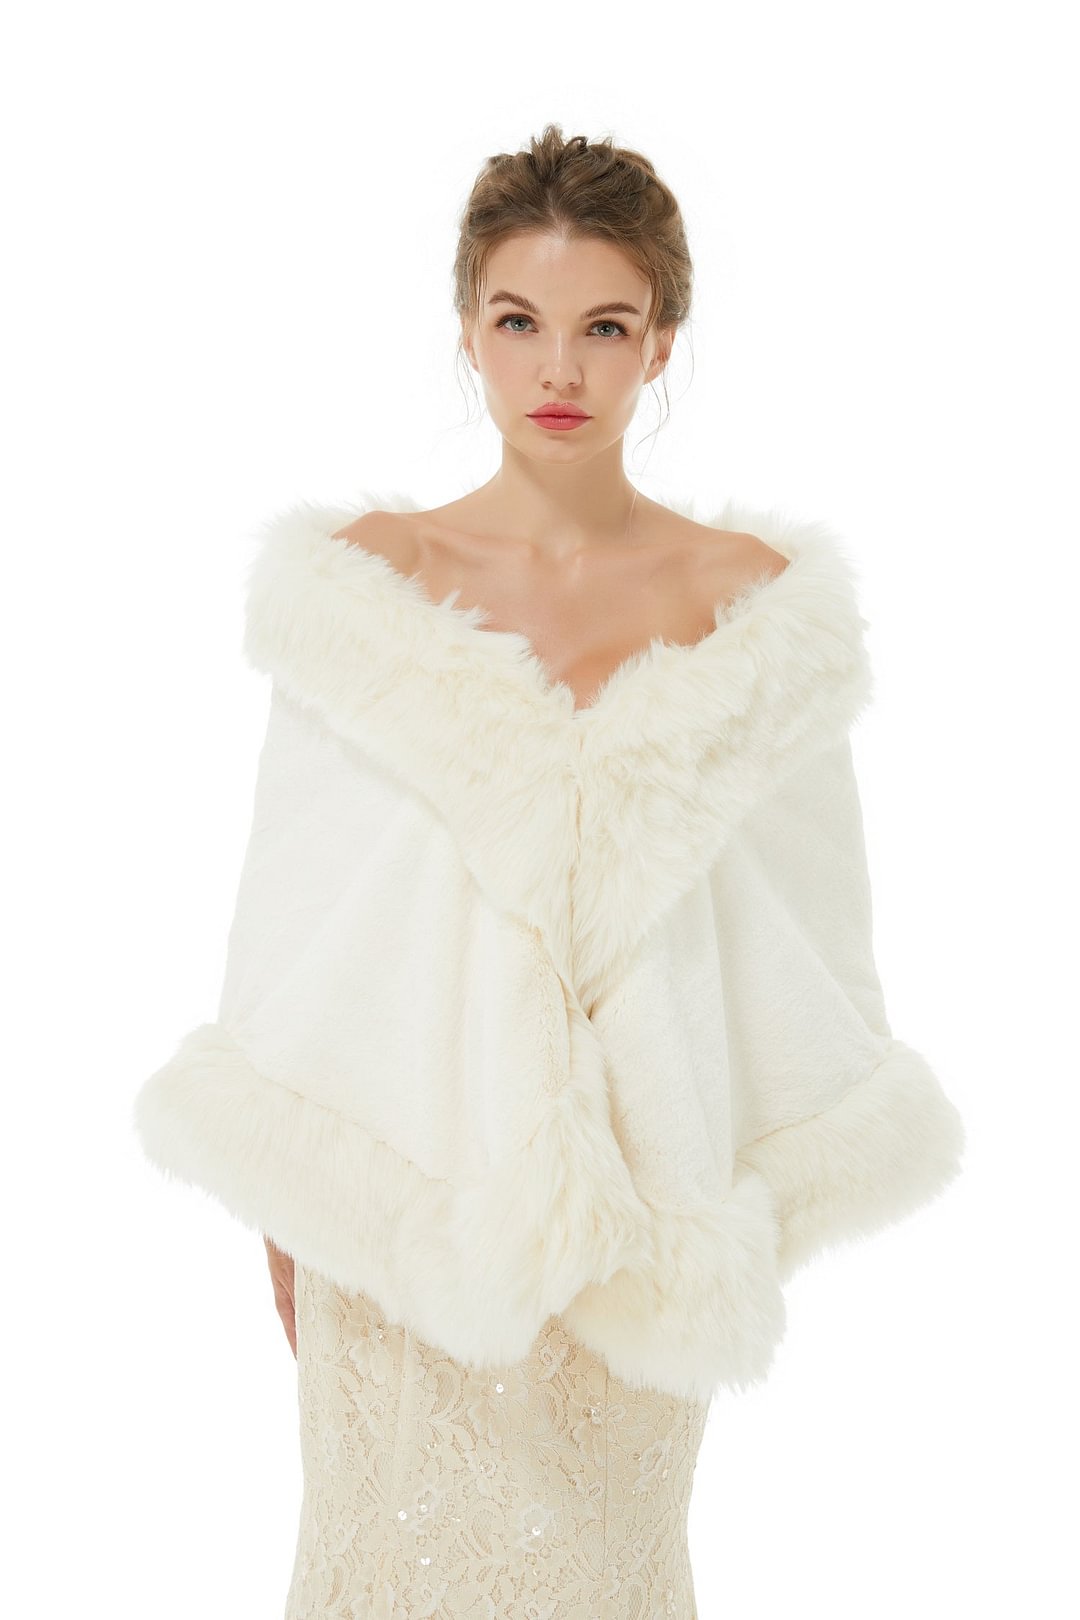 Luluslly White Faux Fur Wrap Winter Wedding Shawl